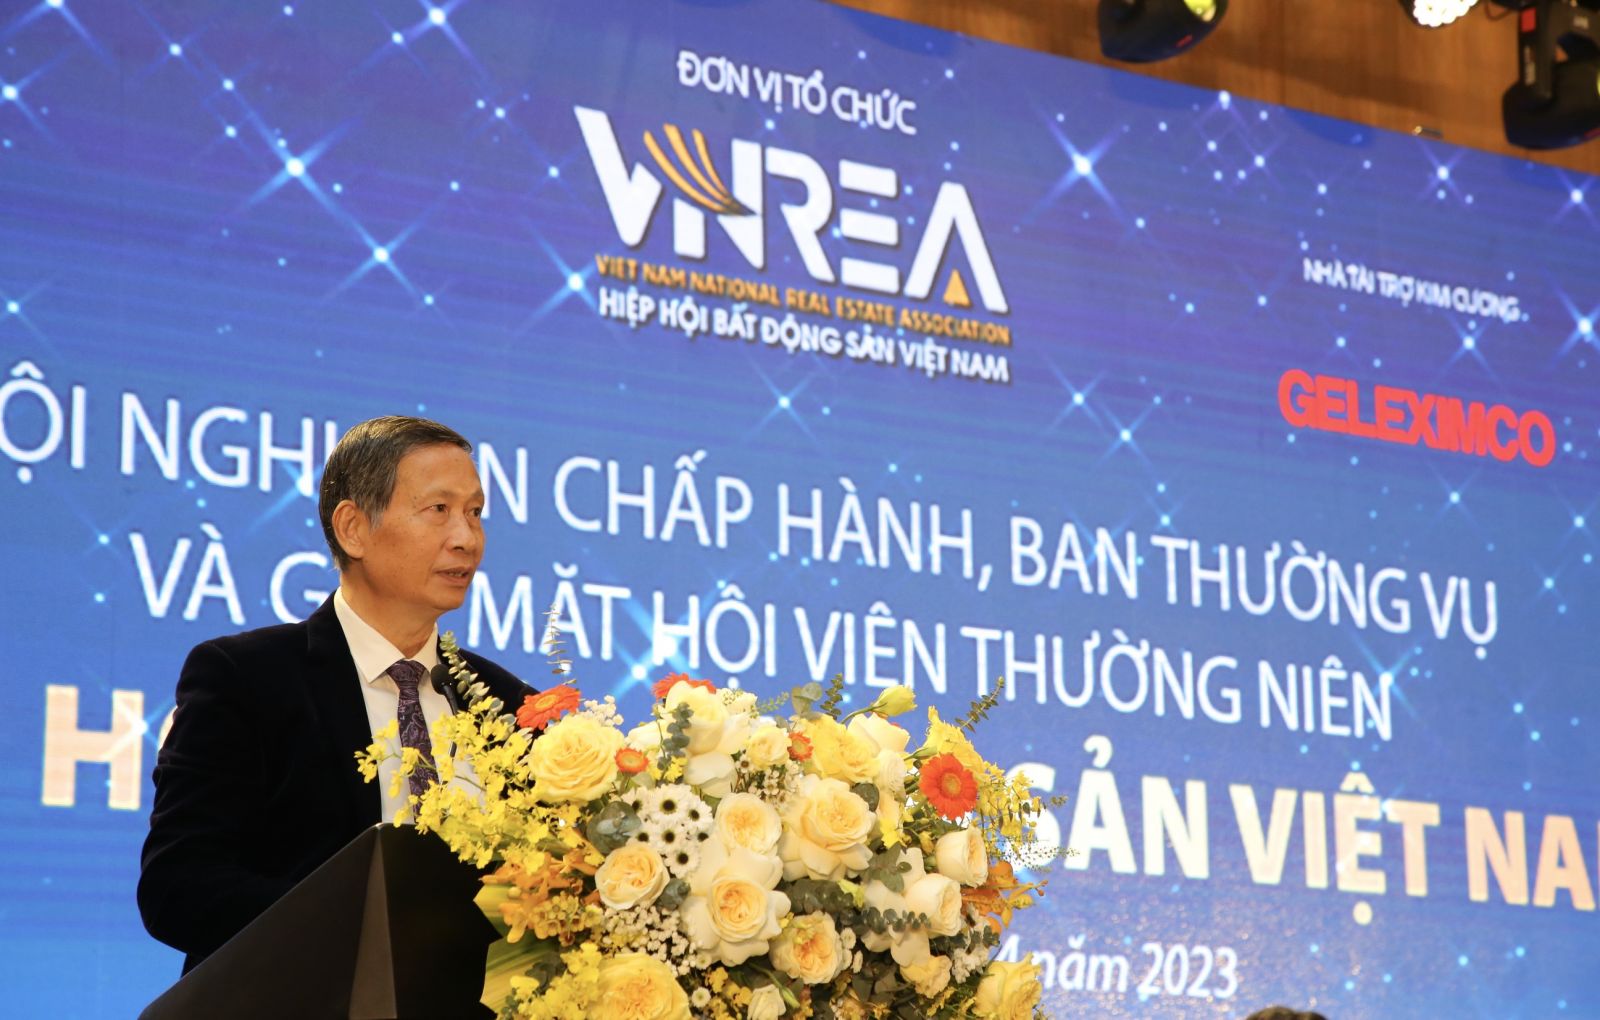 Hội nghị Ban Chấp hành, Ban Thường vụ và gặp mặt Hội viên thường niên 2023 Hiệp hội Bất động sản Việt Nam- Ảnh 9.